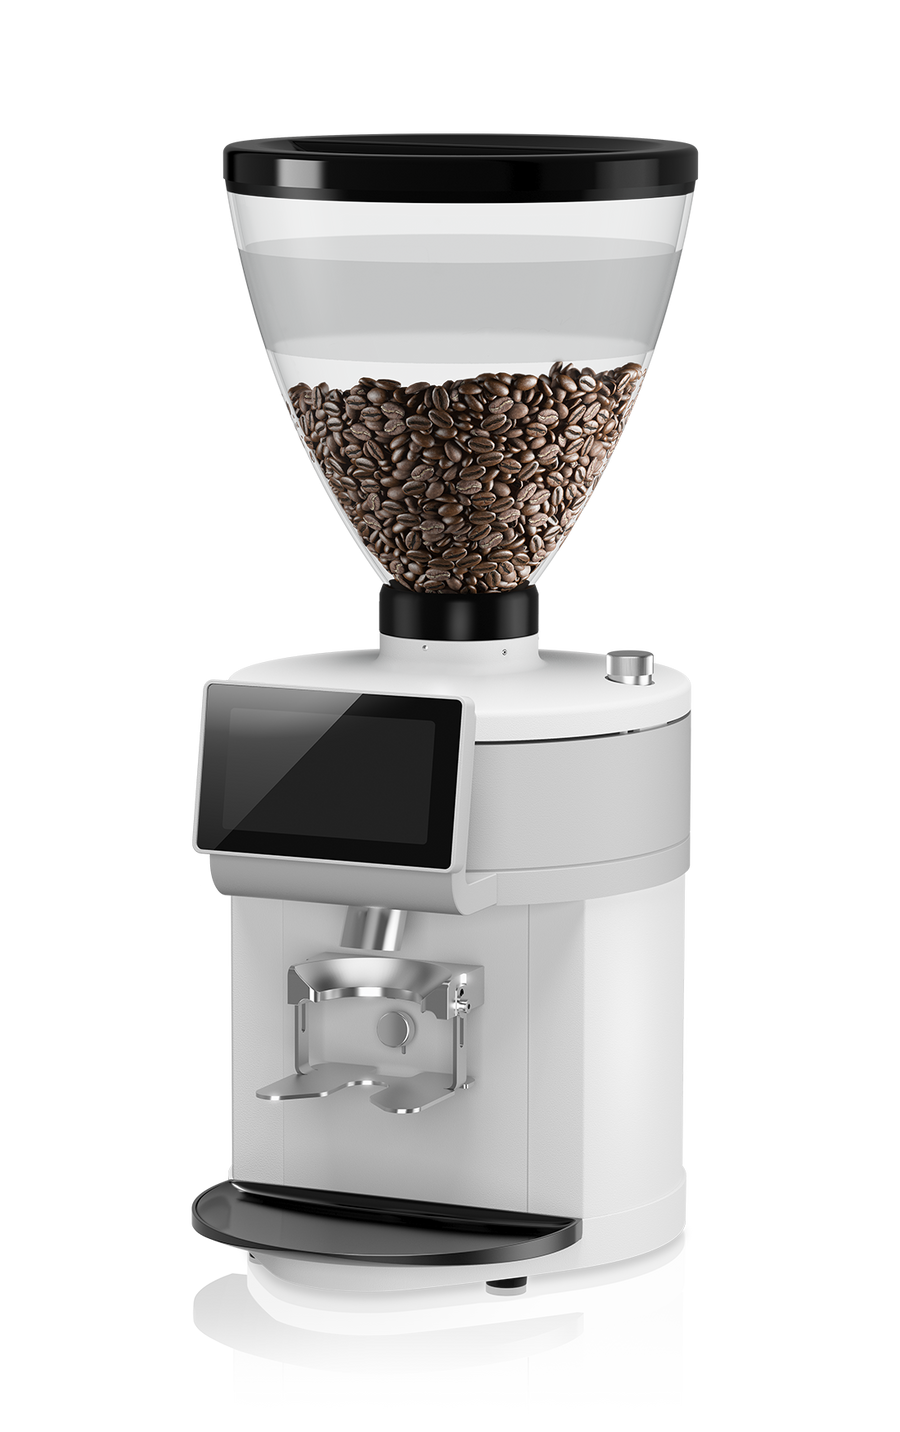 Ditting KE640 2.0 Espresso grinder